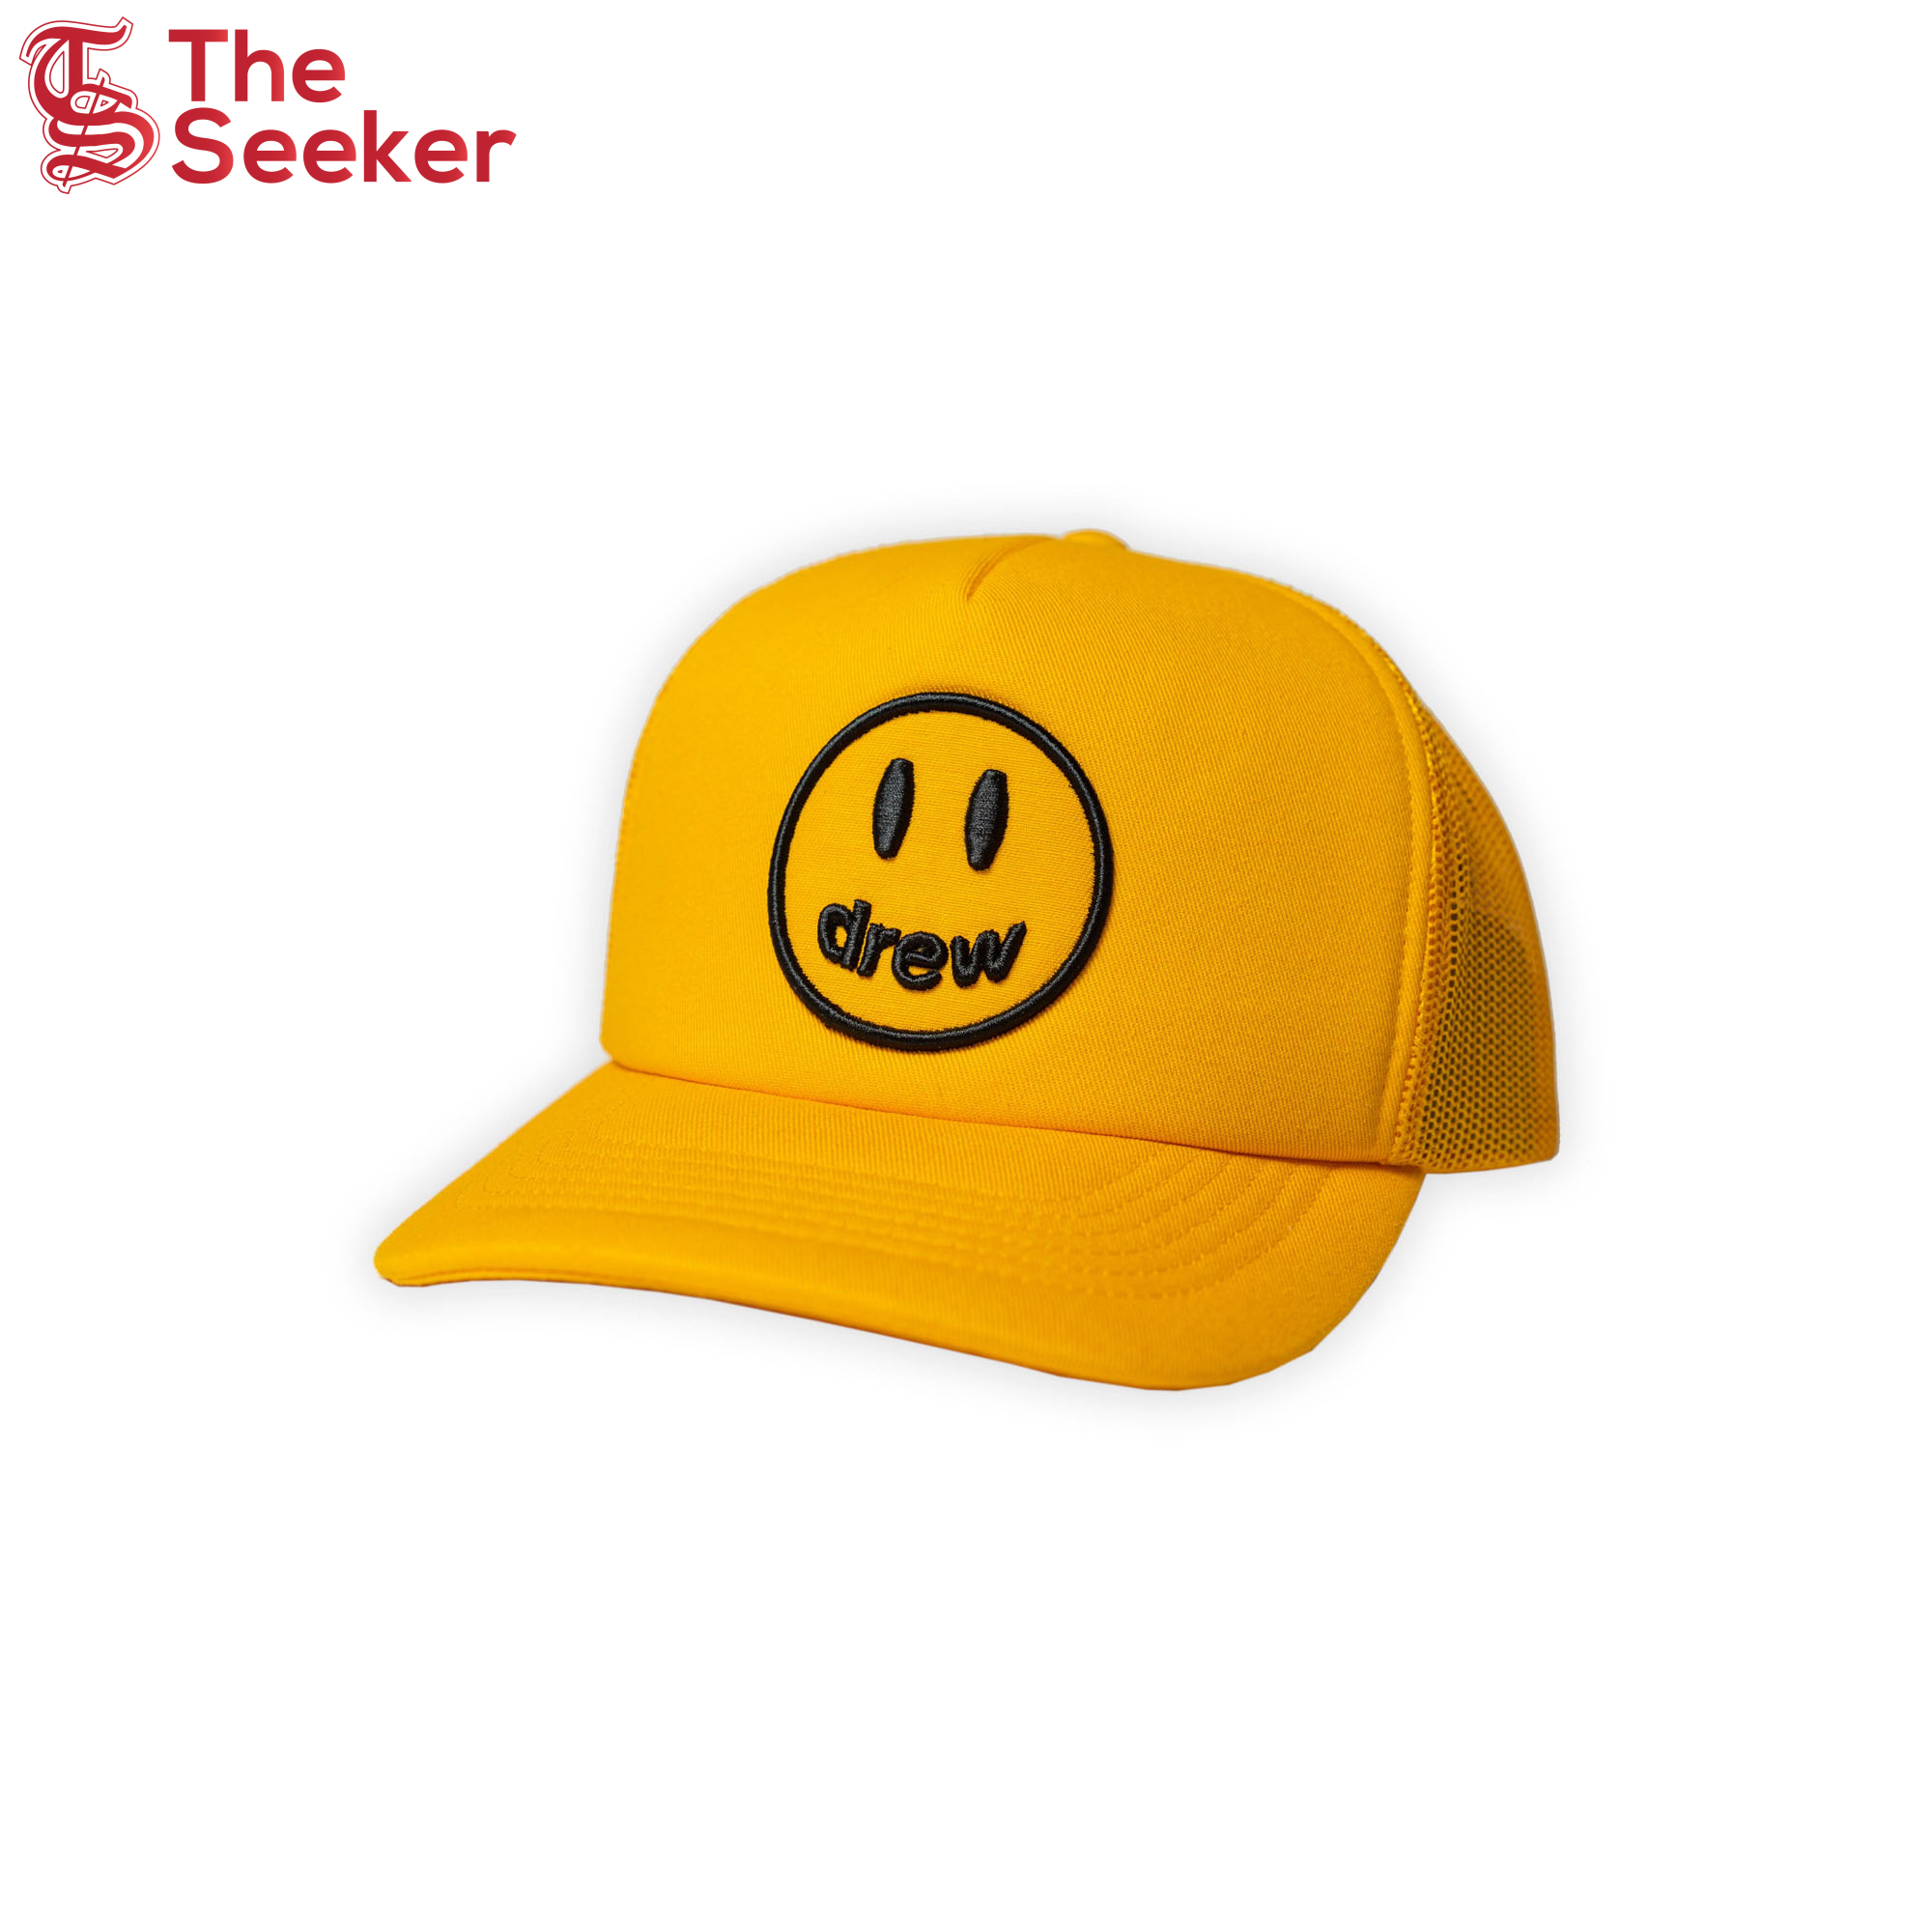 drew house mascot trucker hat ss22 golden yellow